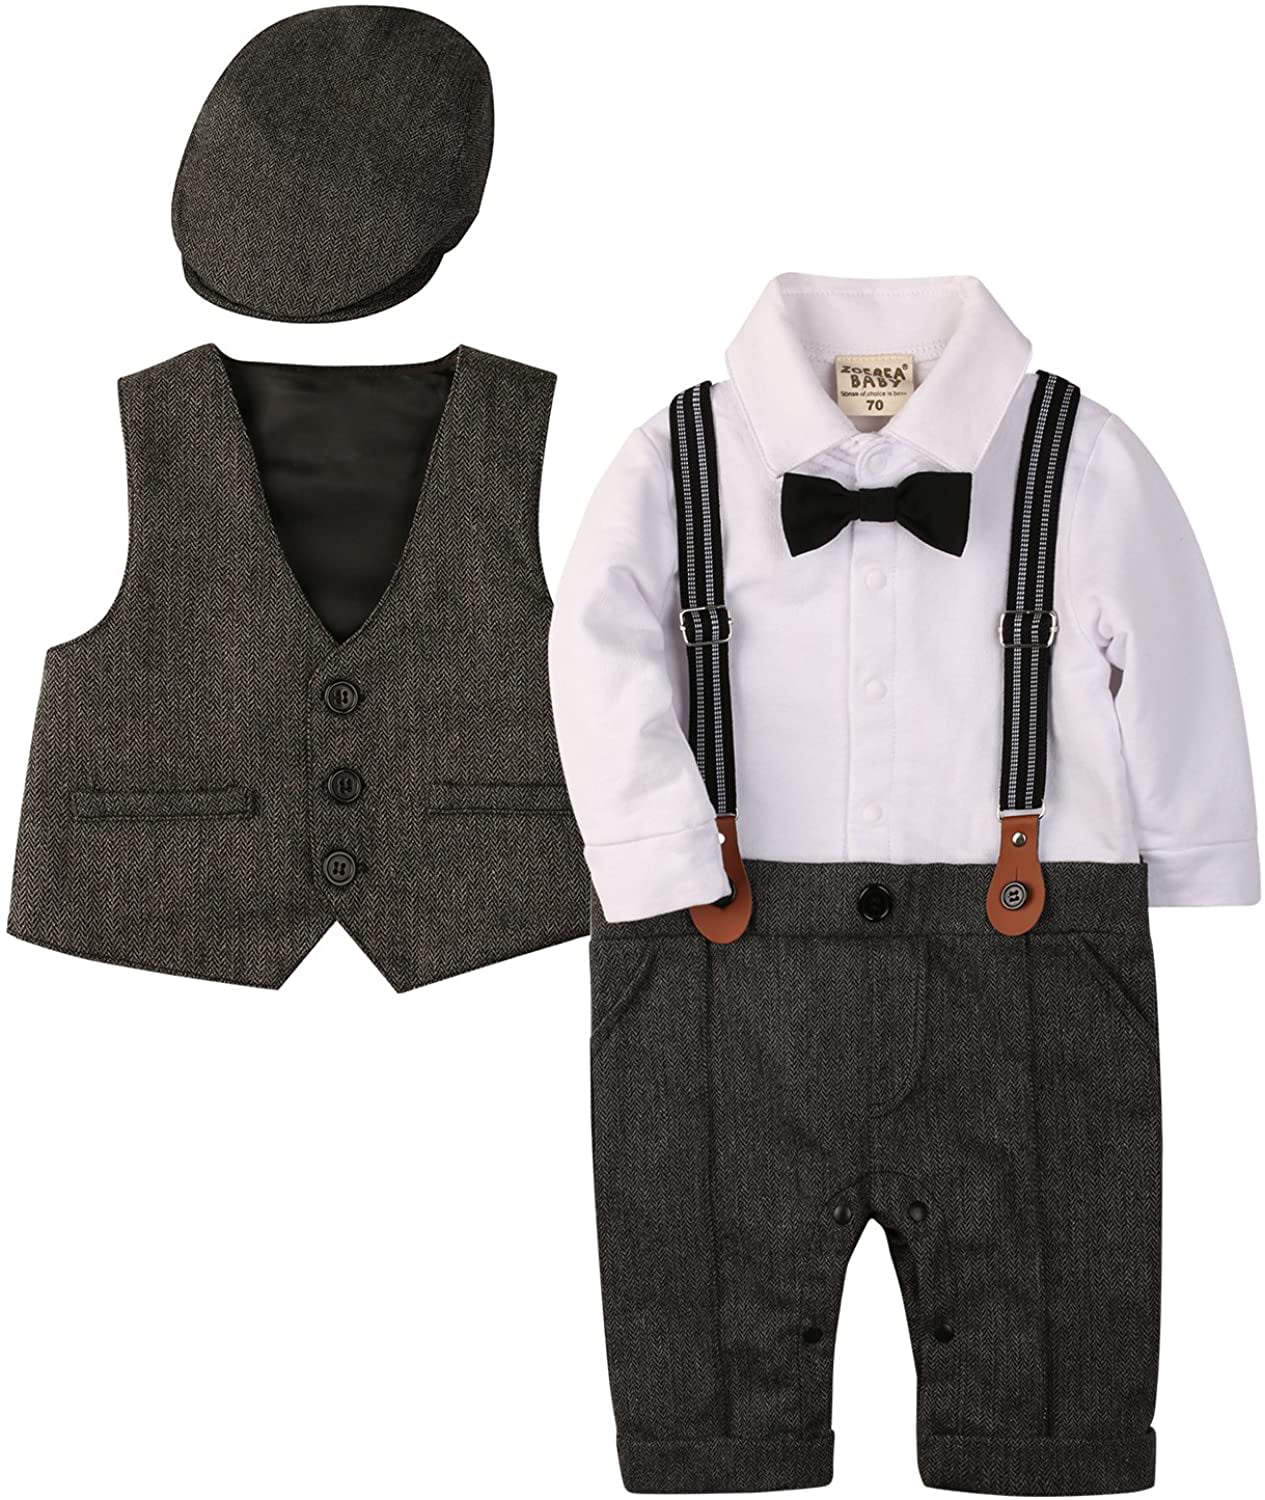 2pc Handsome Baby Boy Gentleman Englon Suit stripe Vest+Pants Kids Party Clothes